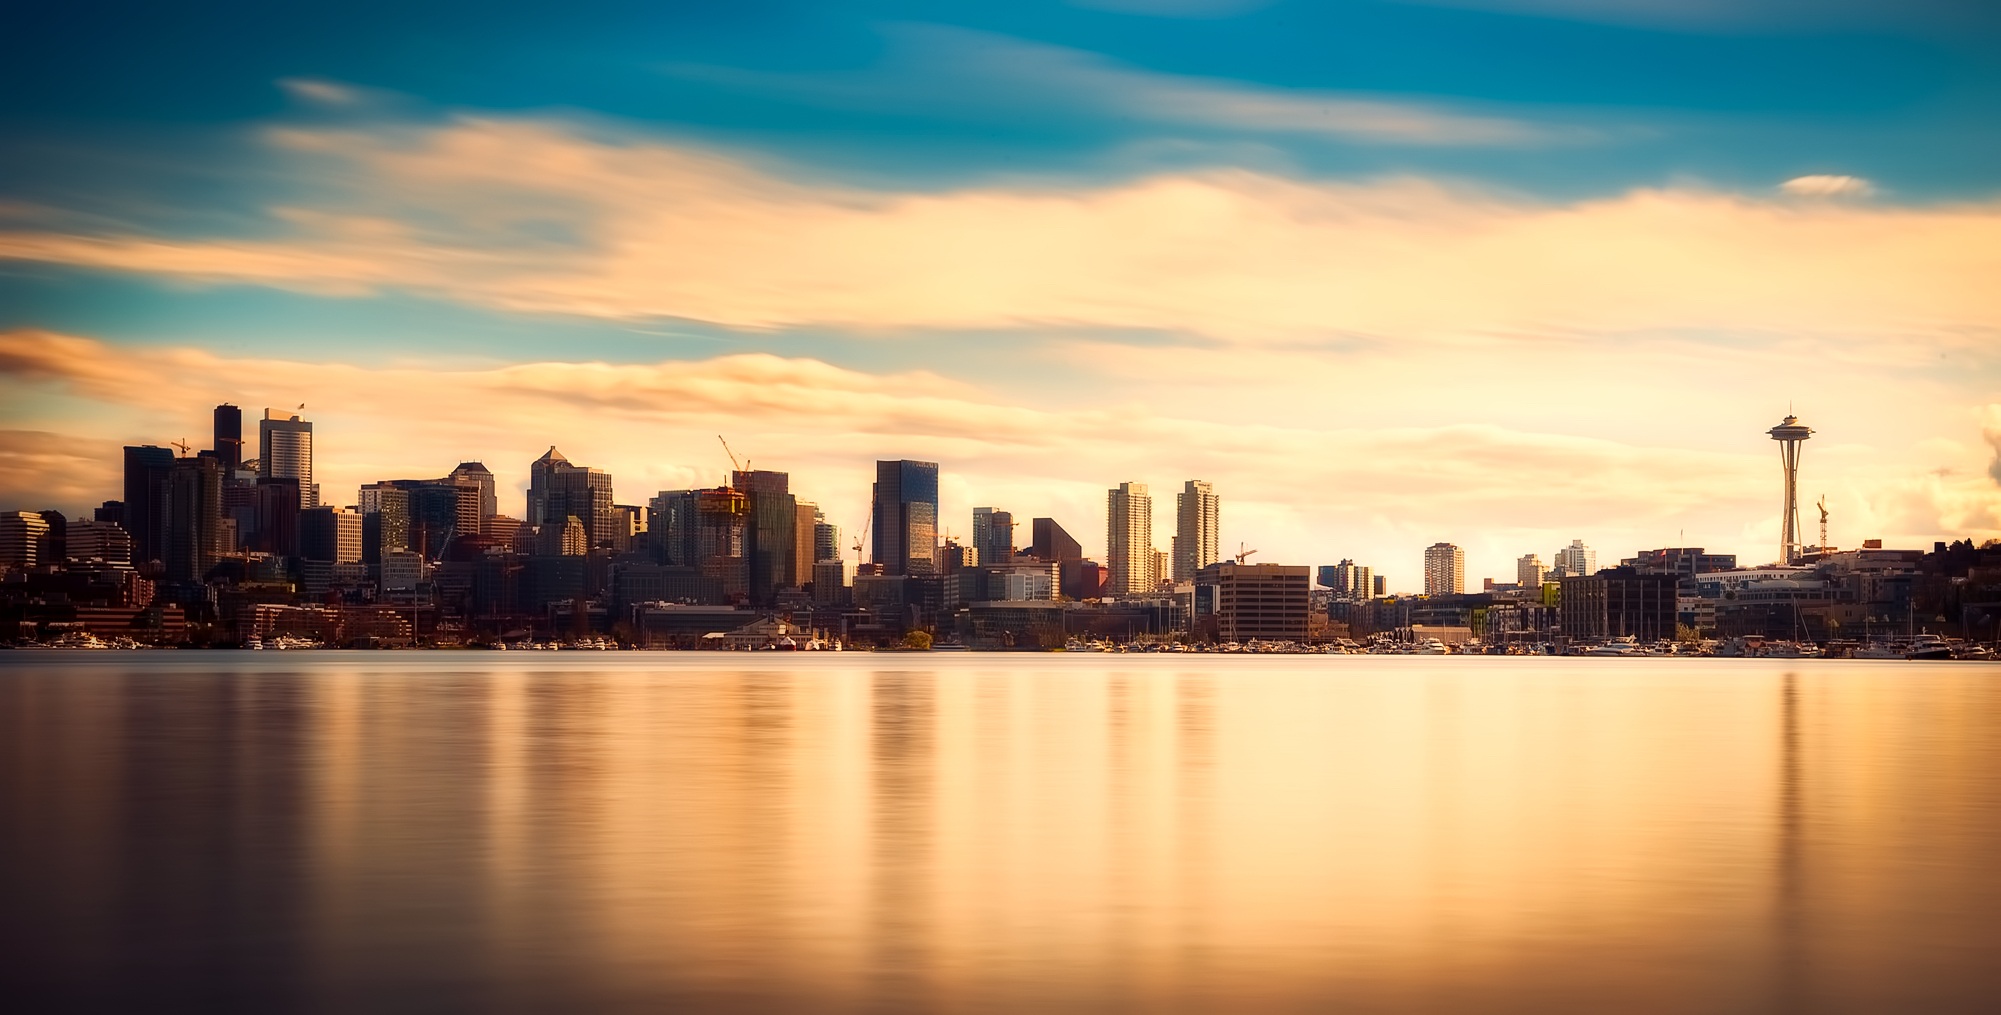  Seattle skyline  Photo courtesy of Pixabay  